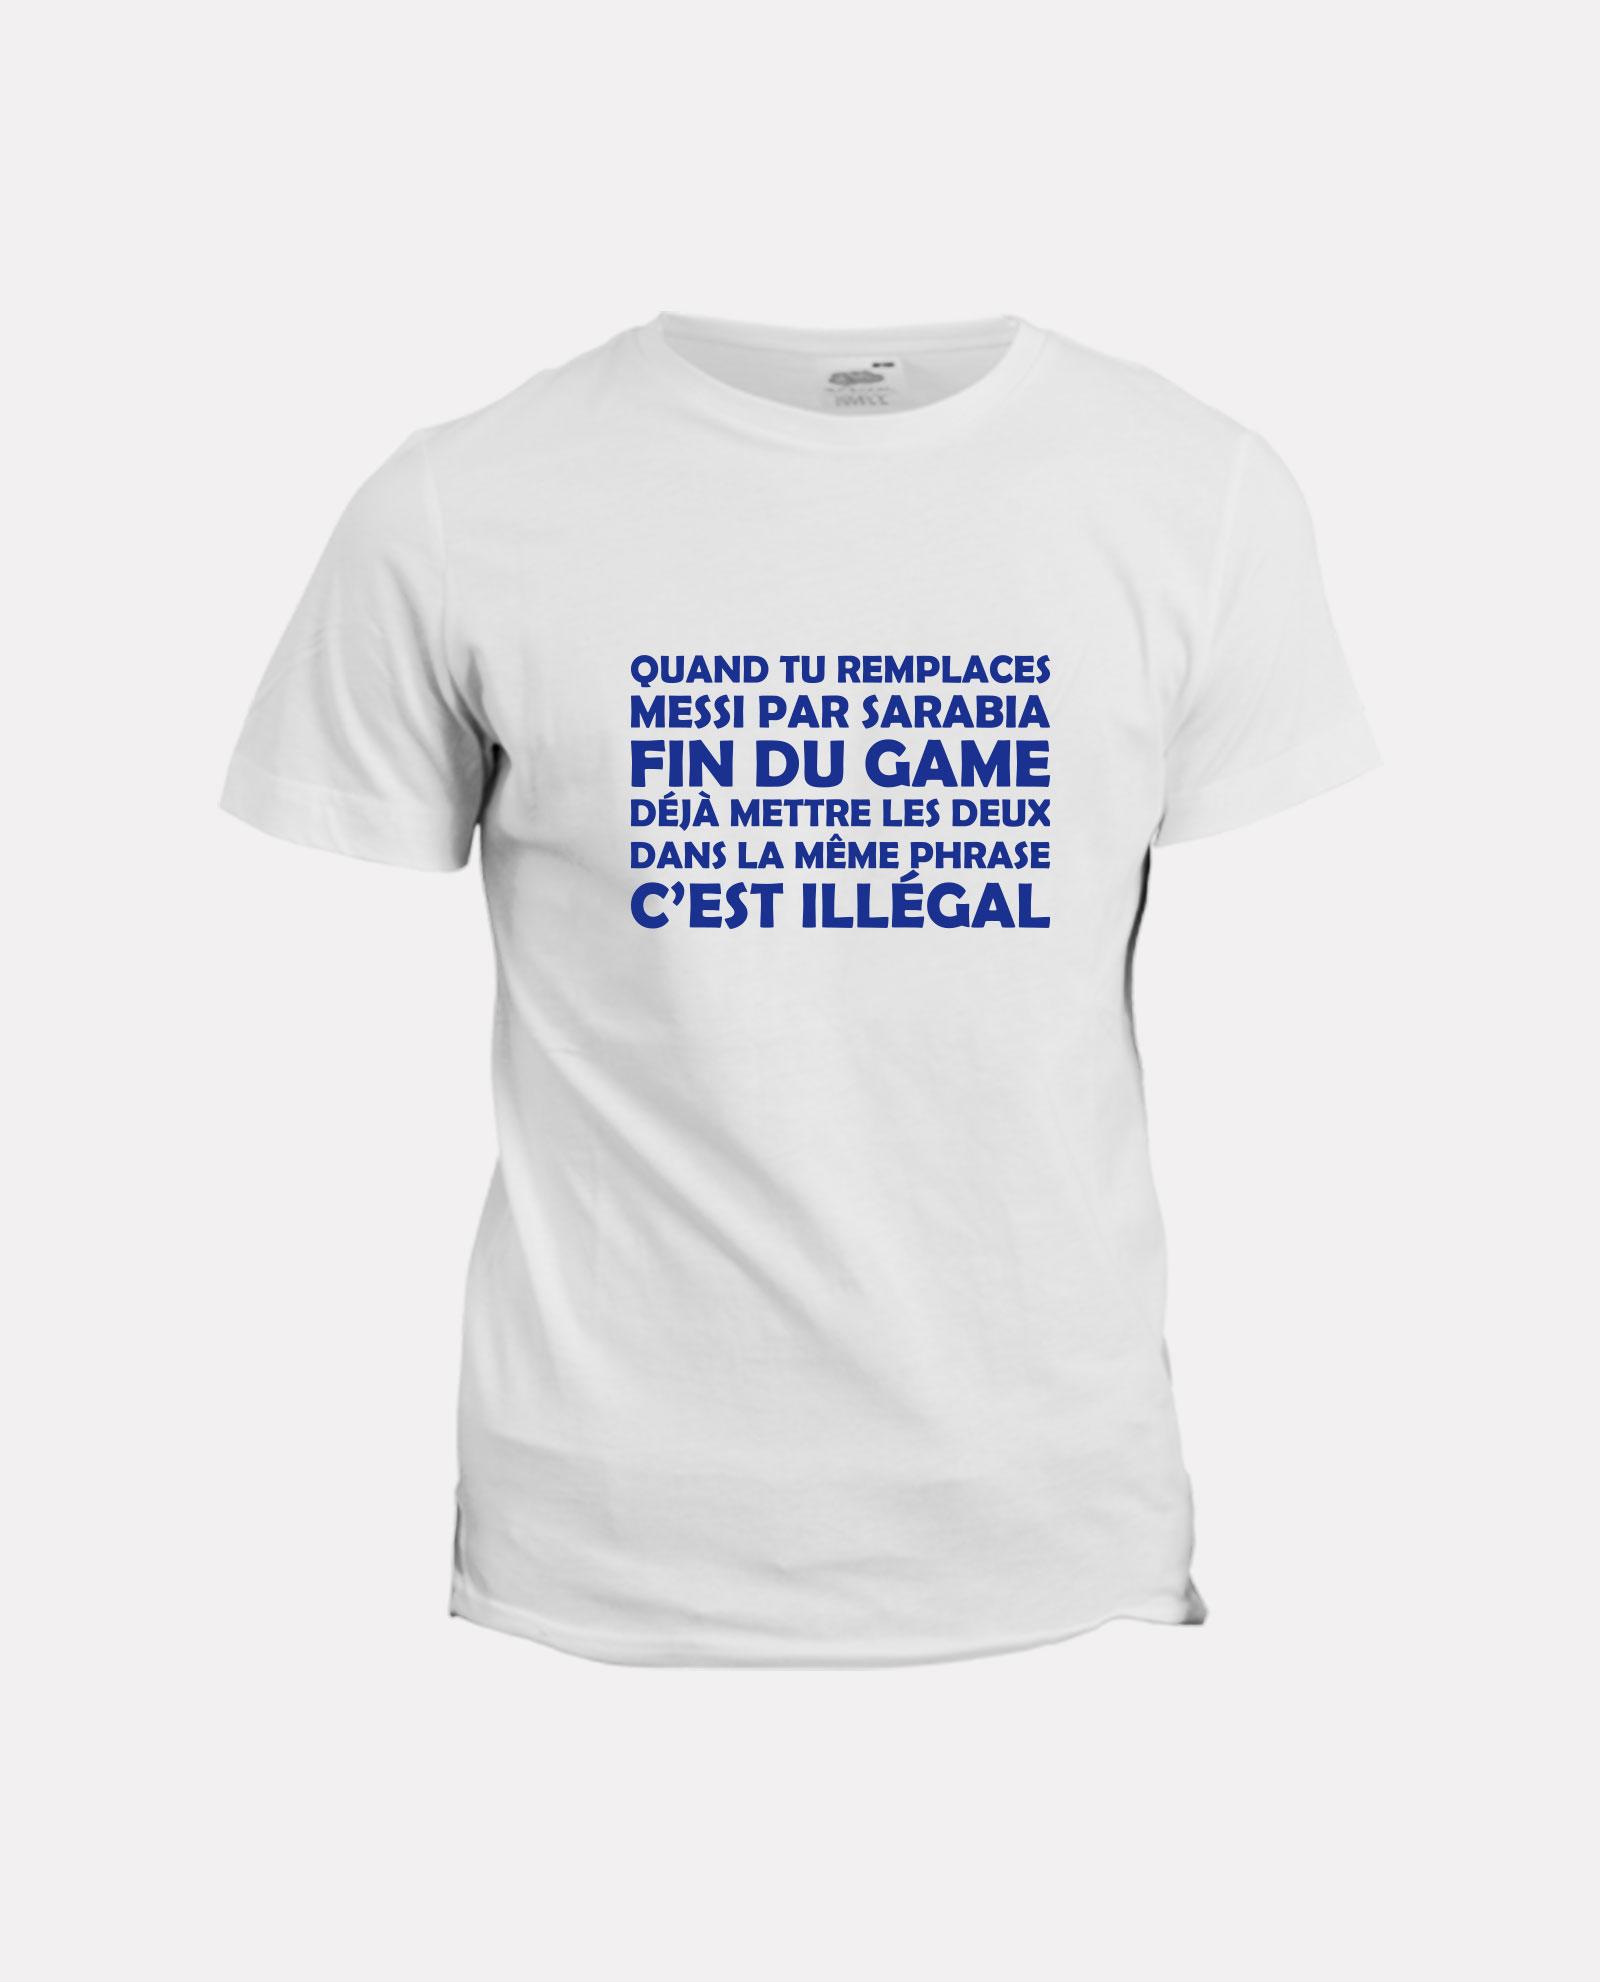 la-ligne-shop-t-shirt-humour-quand-tu-remplaces-messi-par-sarabia-fin-du-game-c-est-illegal